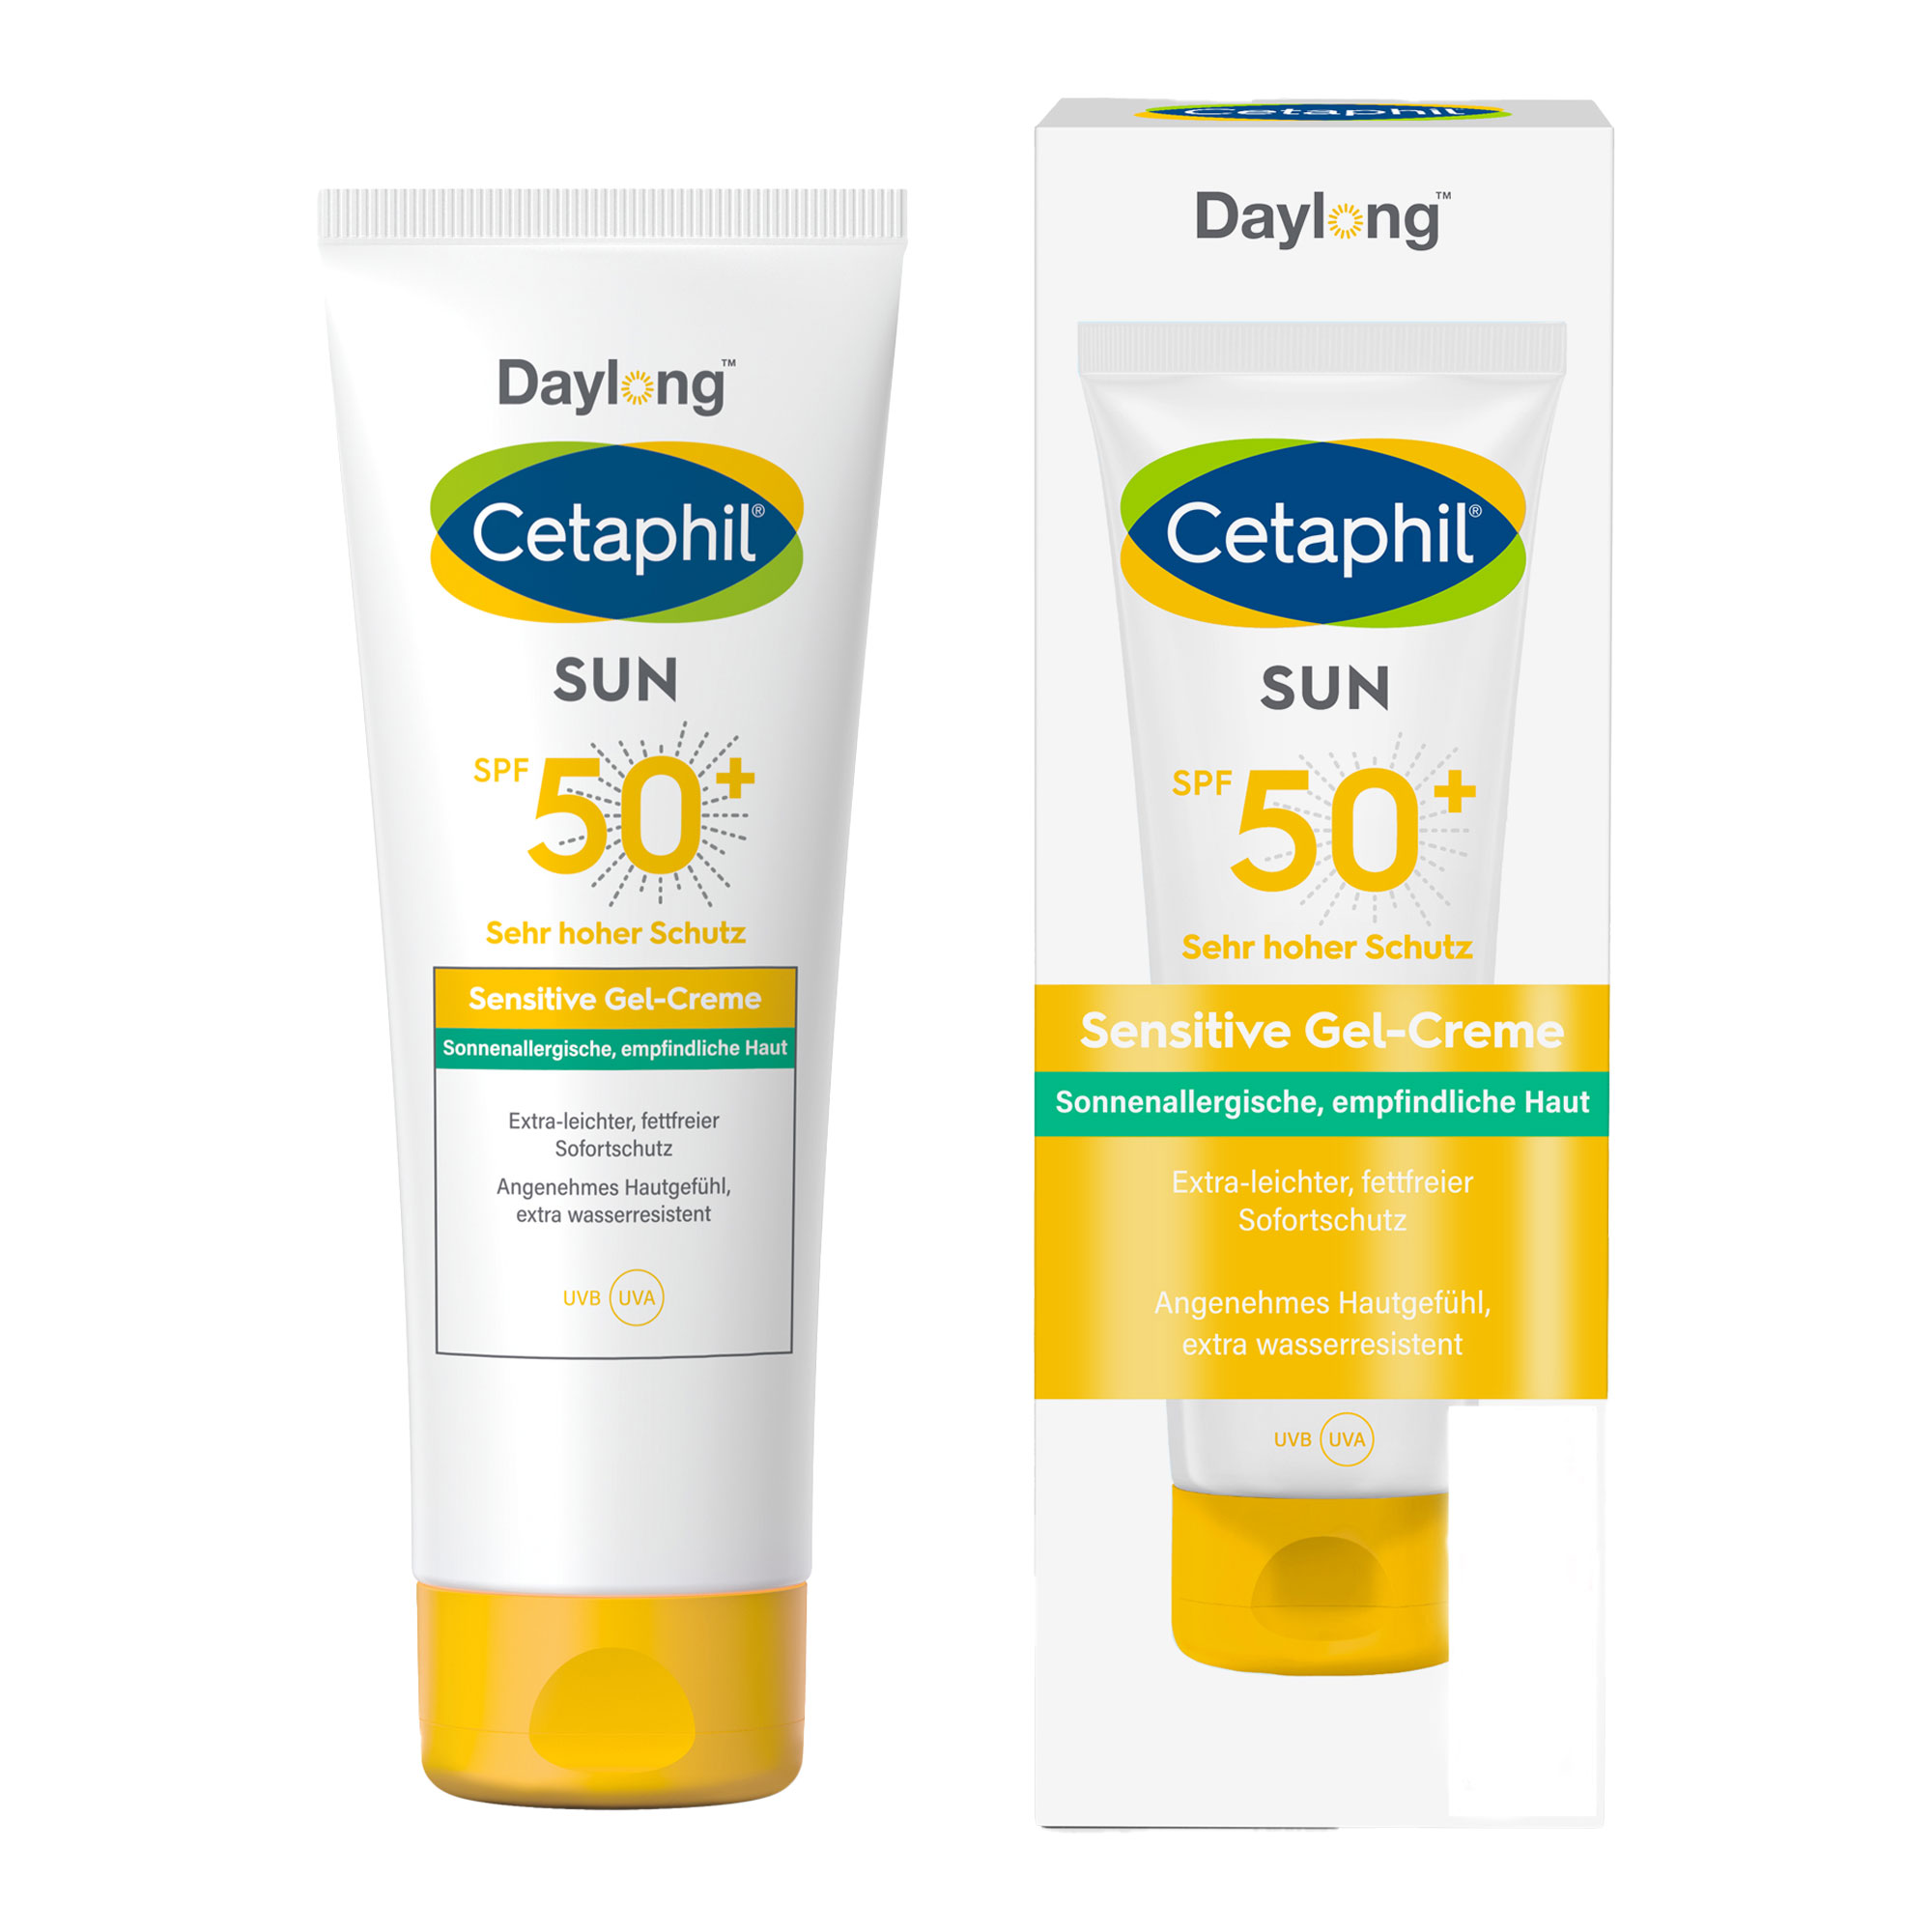 Extra leichte fettfreie Sonnencreme mit sehr hohem Schutz. Für empfindliche und zu Sonnenallergie neigende Haut.